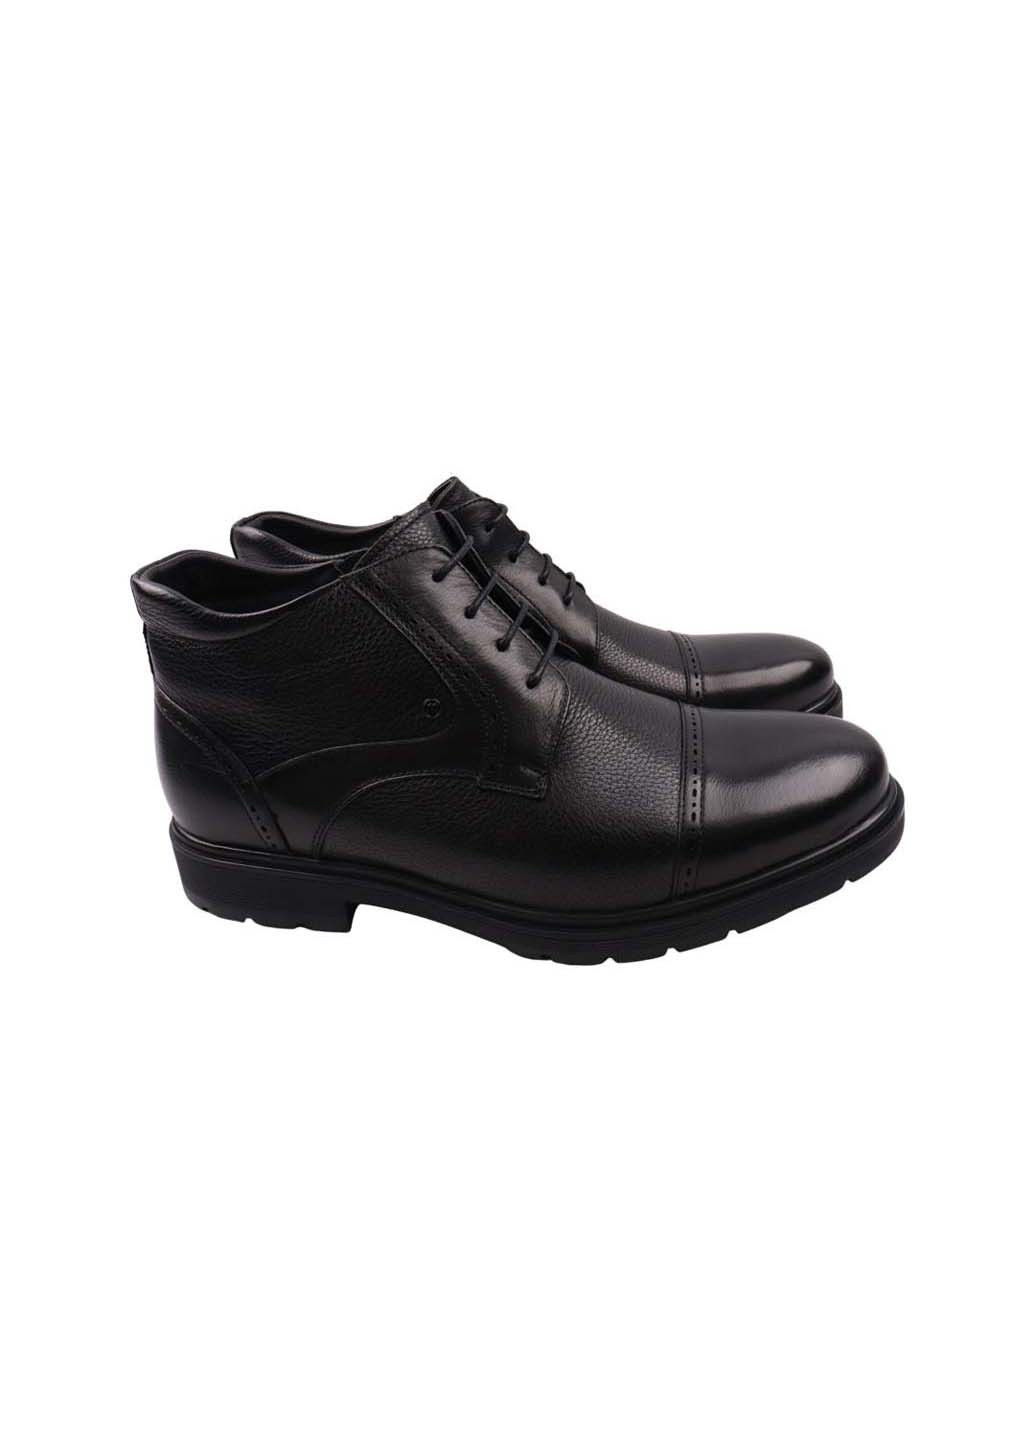 Черные осенние ботинки Cosottinni